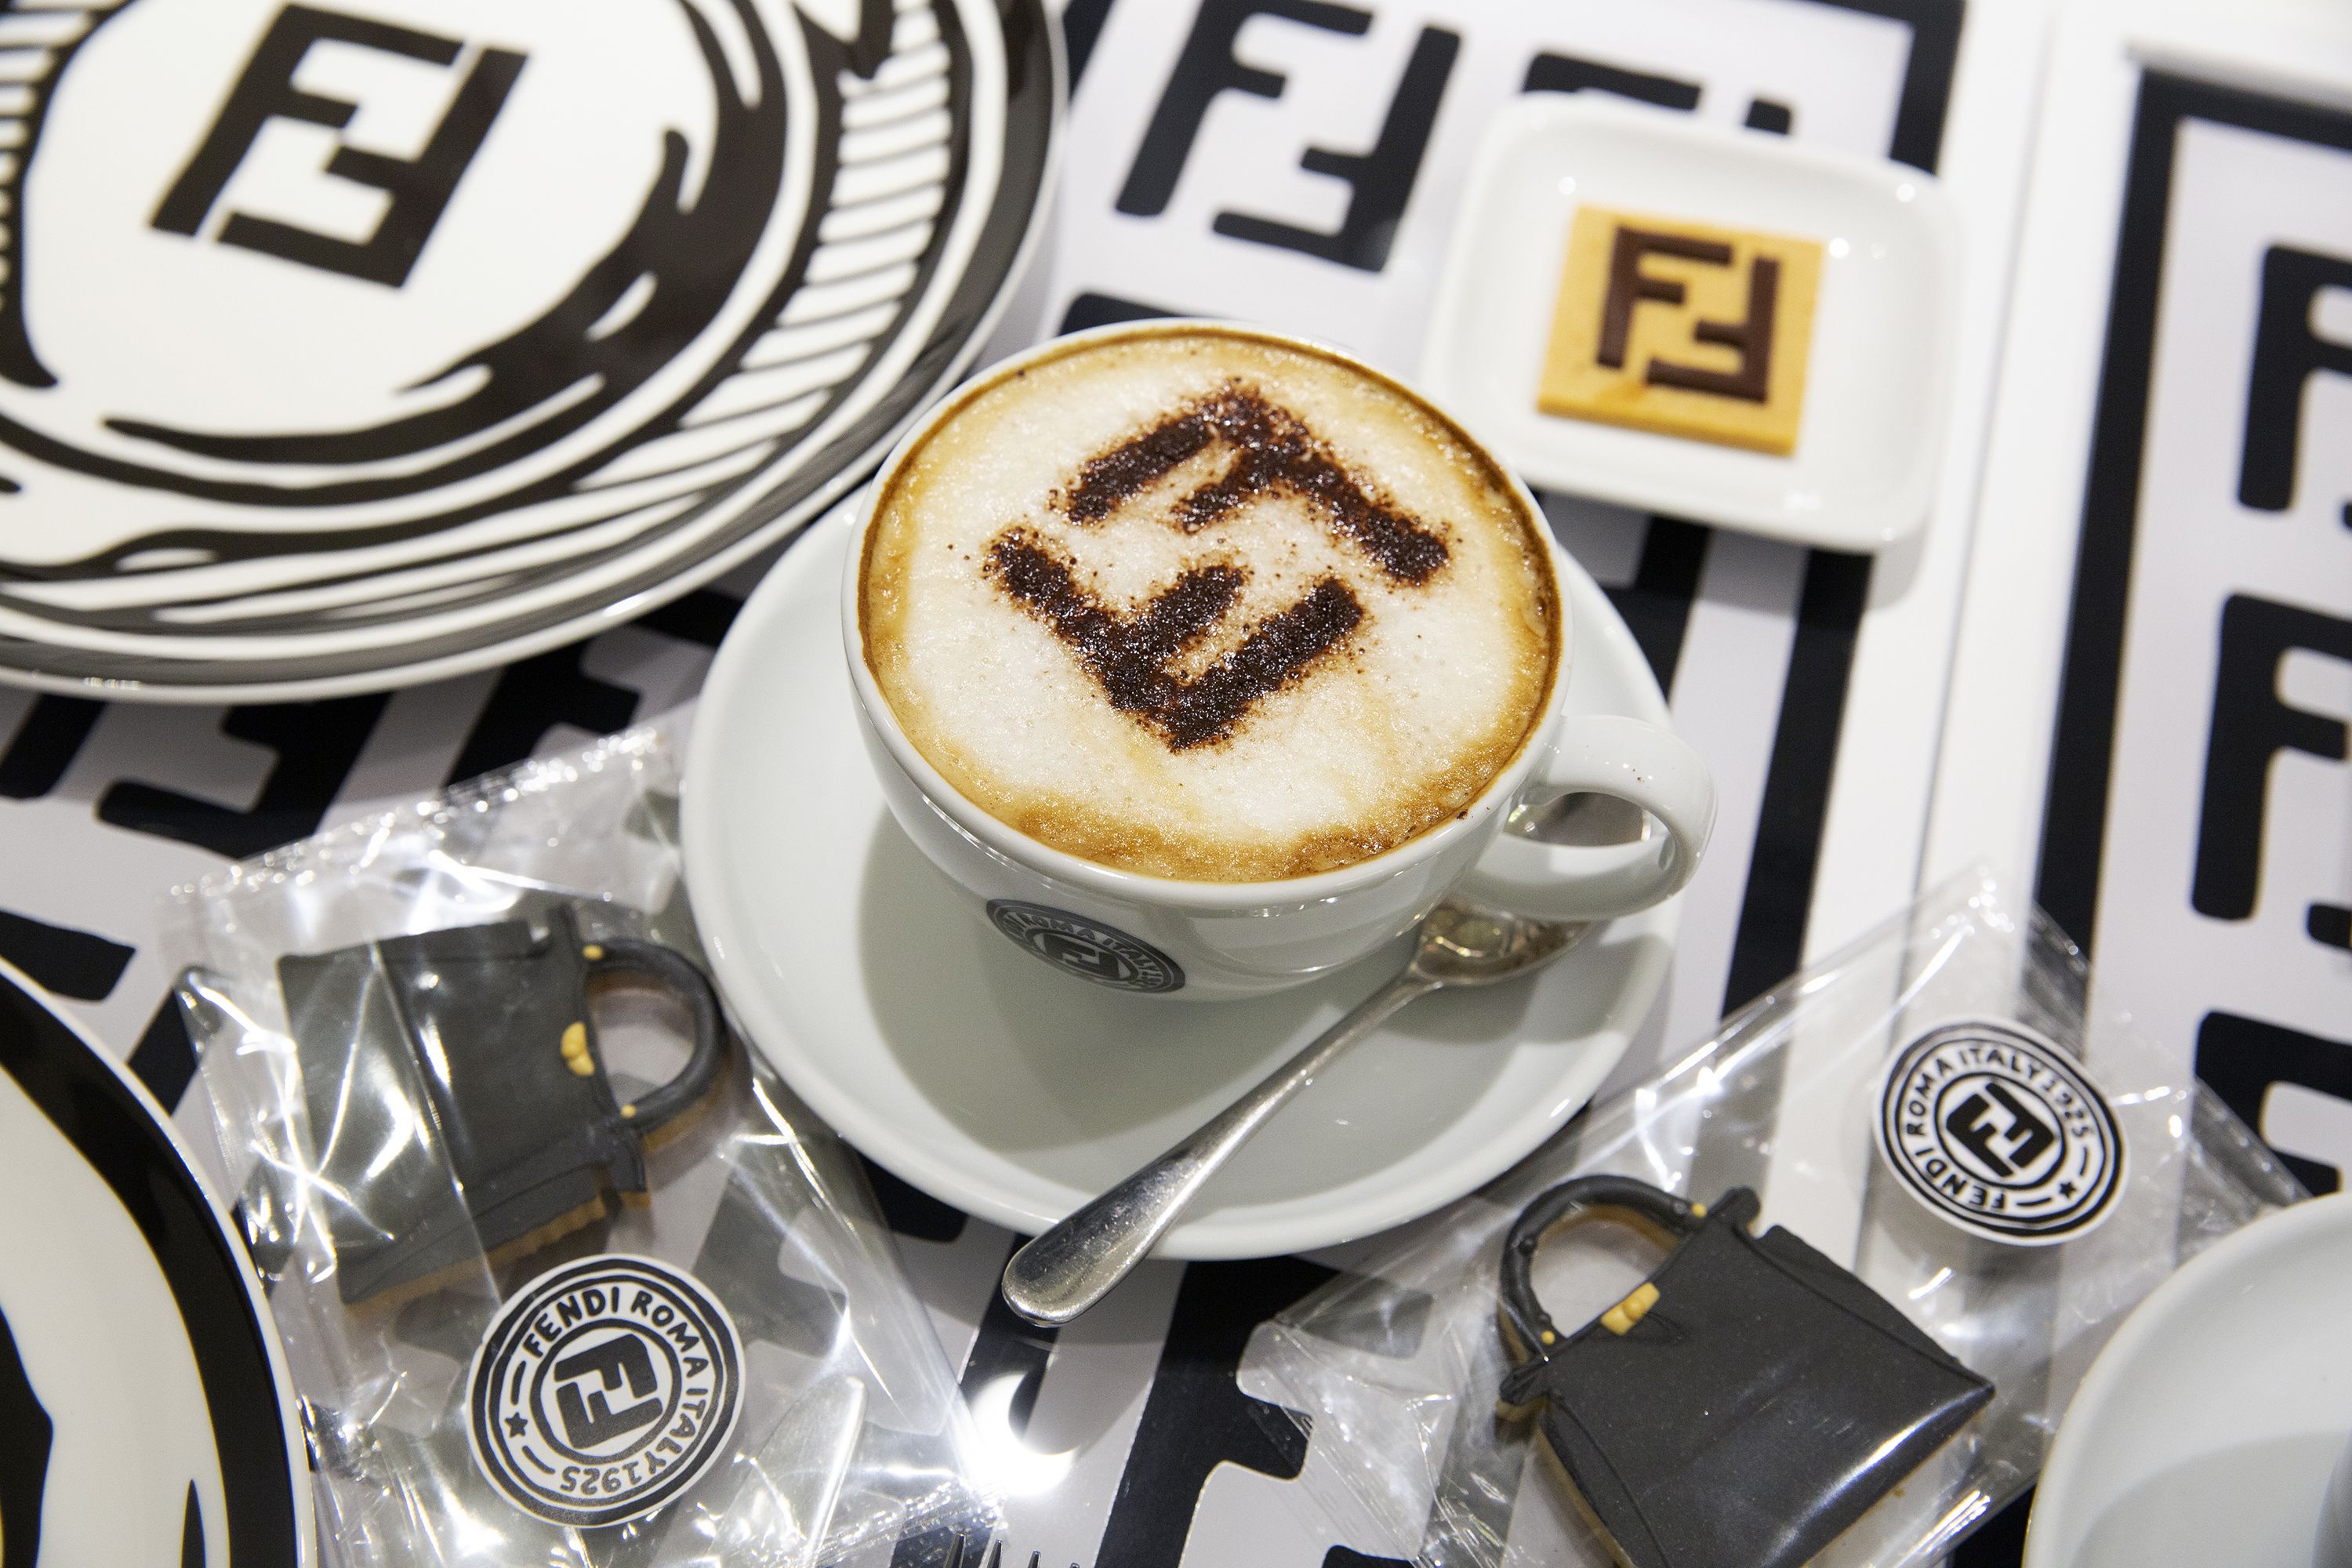 Fendi Caffe pop-up by Joshua Vides opens in Harrods